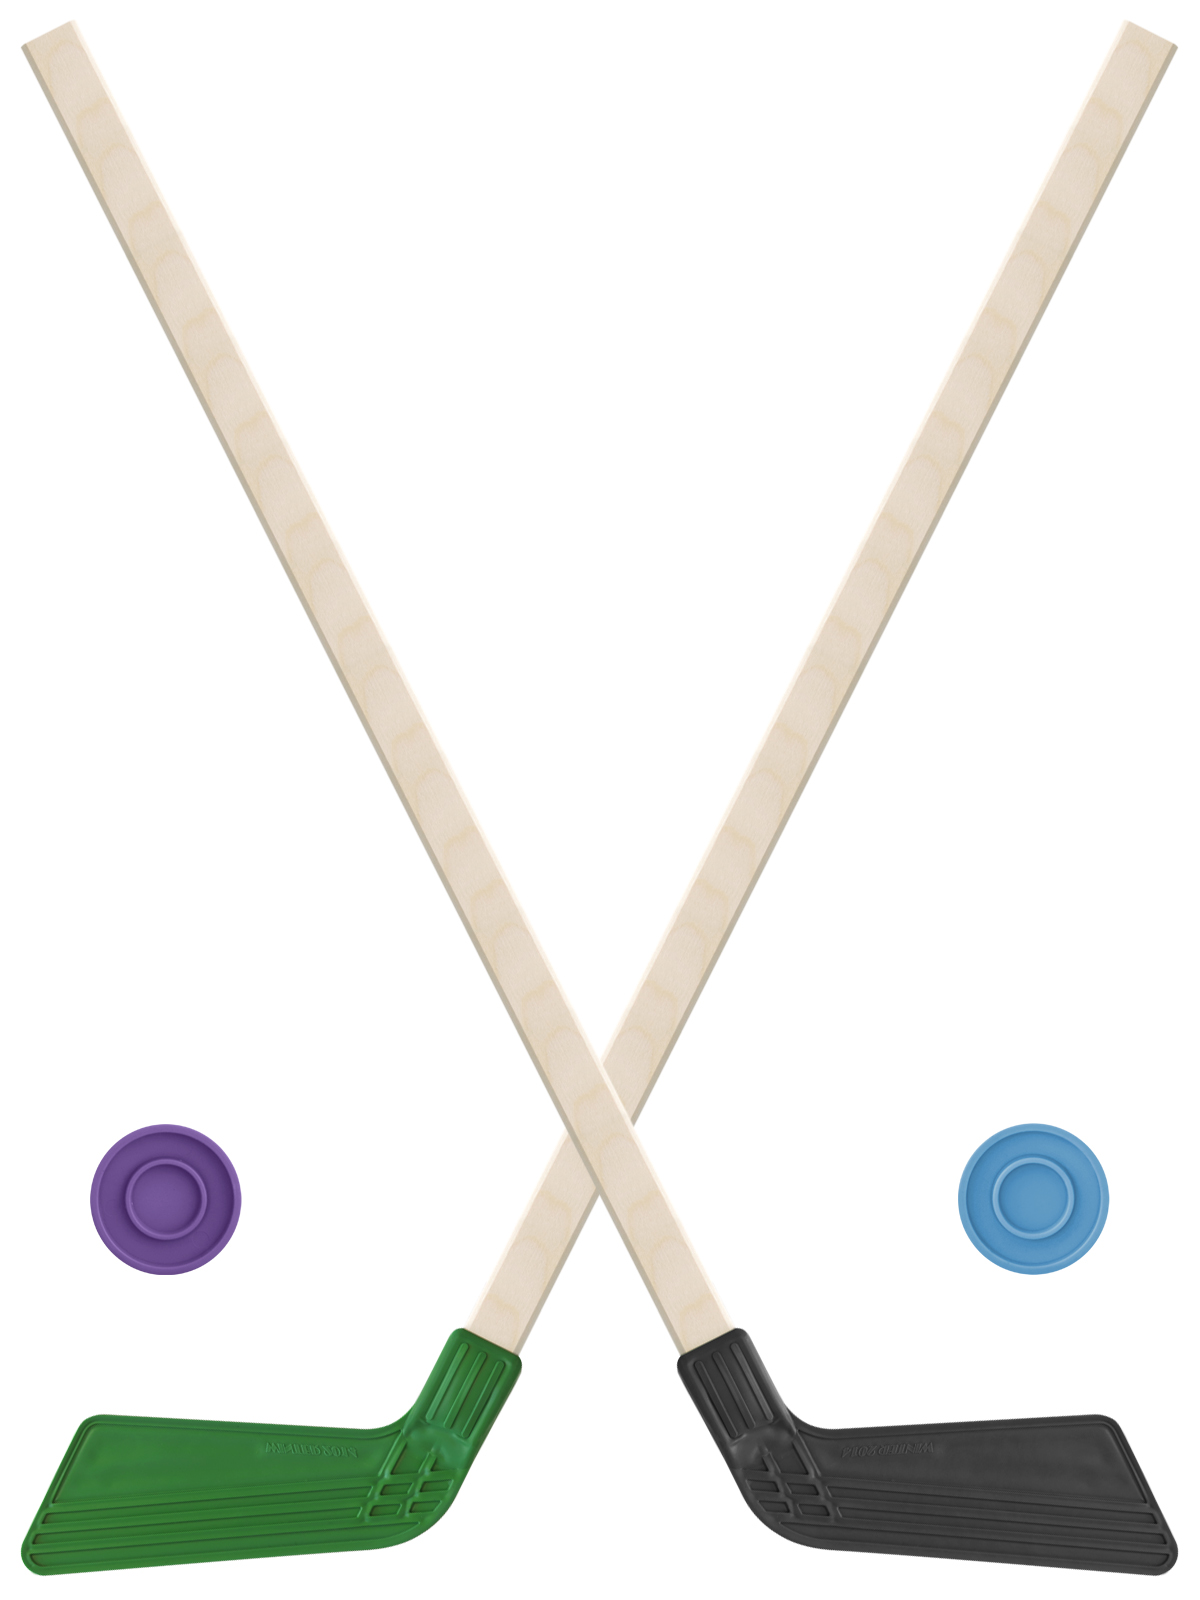 Детский хоккейный набор Задира-плюс клюшка хоккейная детская 80см (зел и черн) 2шт +2шайбы клюшка флорбольная acito mini 35 orange 65 round прямой 3006 003